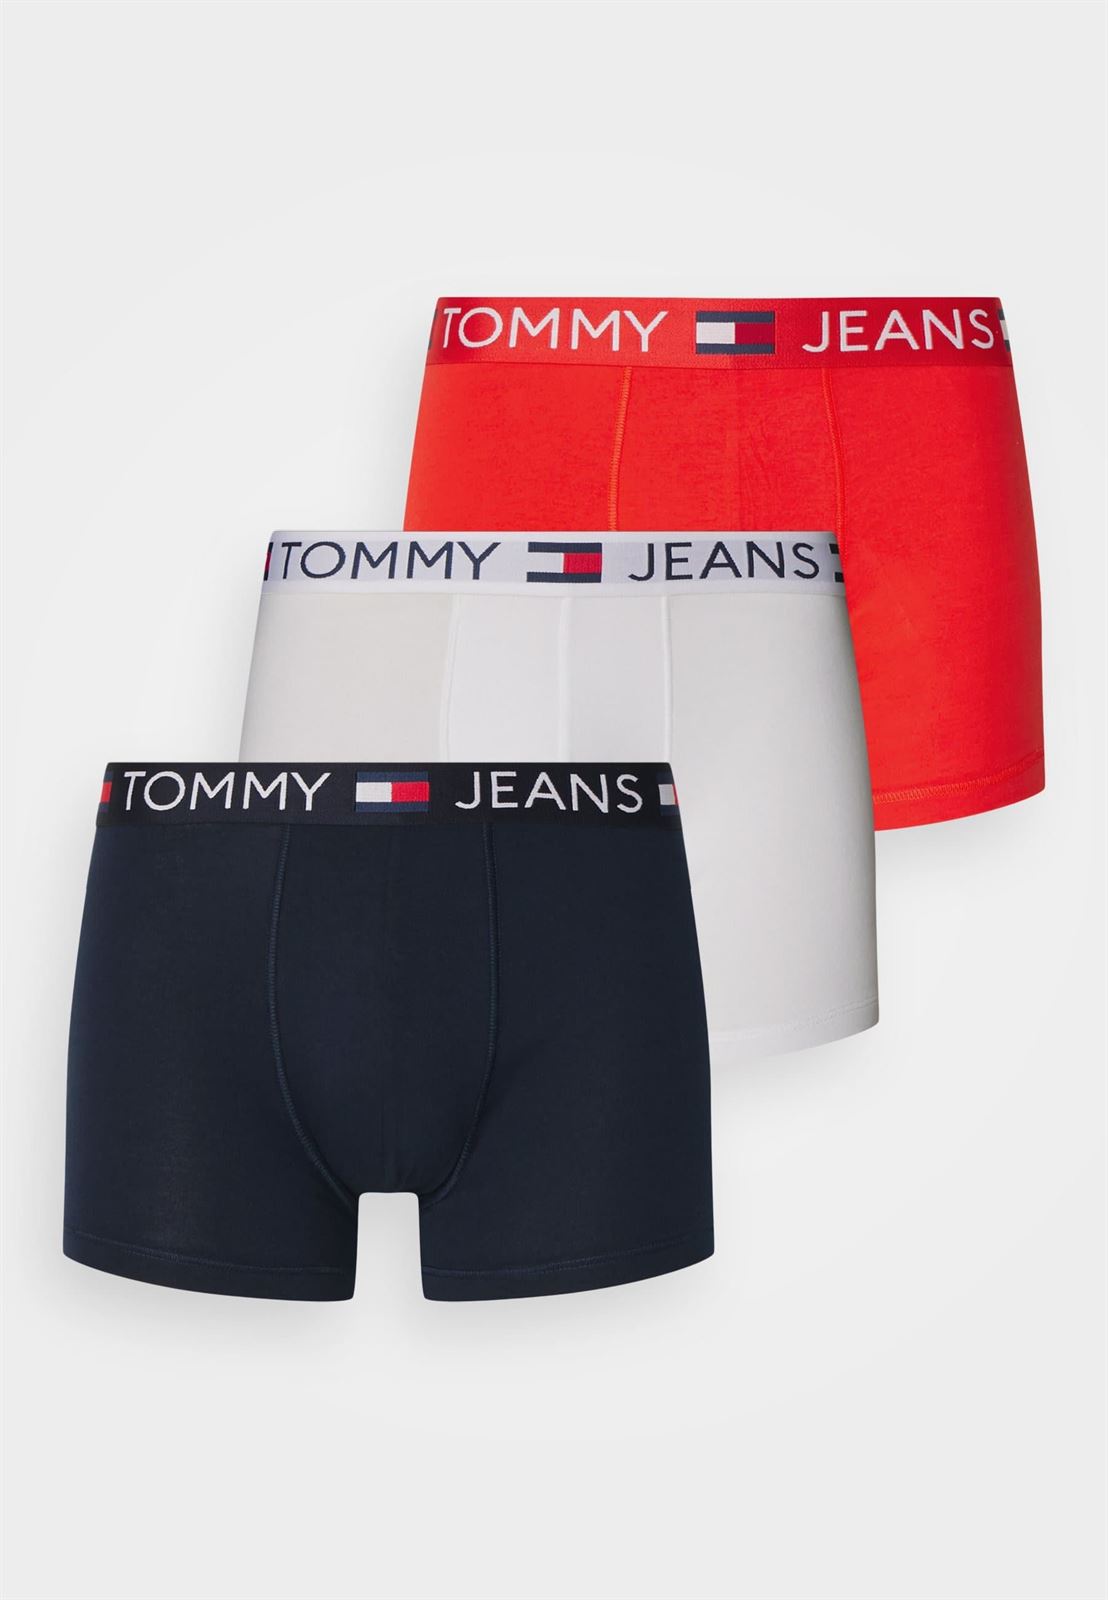 Pack 3 boxer Tommy Jeans UM0UM0329 0VC hot heat/wht/drk ngt navy - Imagen 1